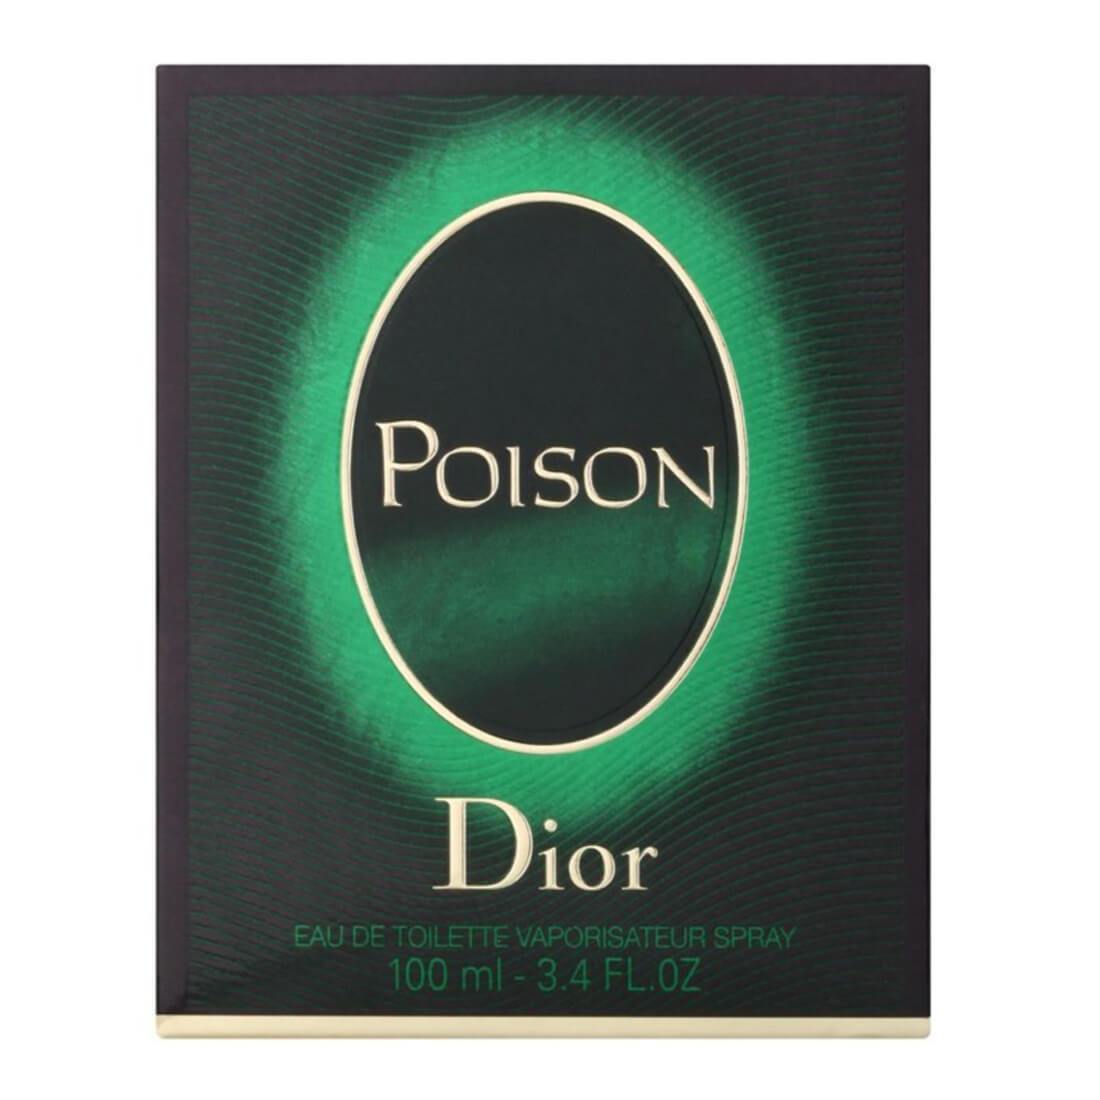 Christian Dior Poison Eau De Toilette For Women - 100ml